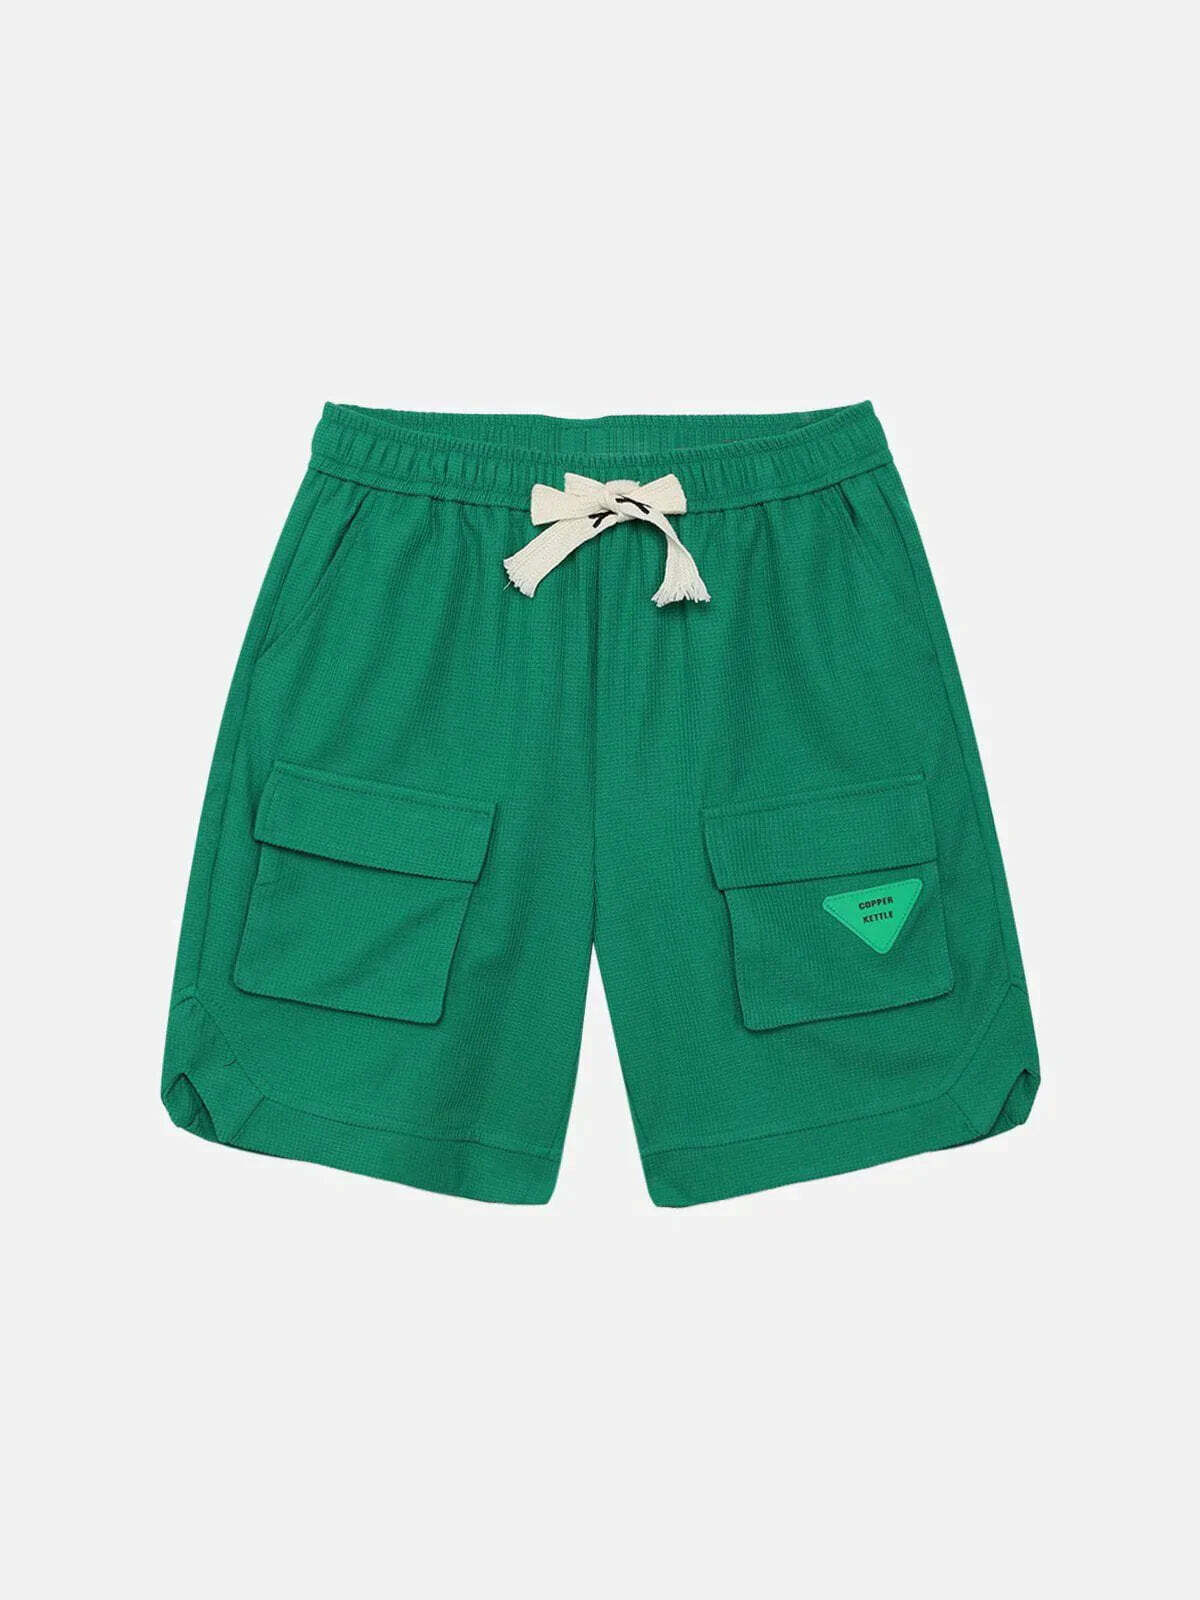 drawstring cargo shorts innovative streetwear essential 3415